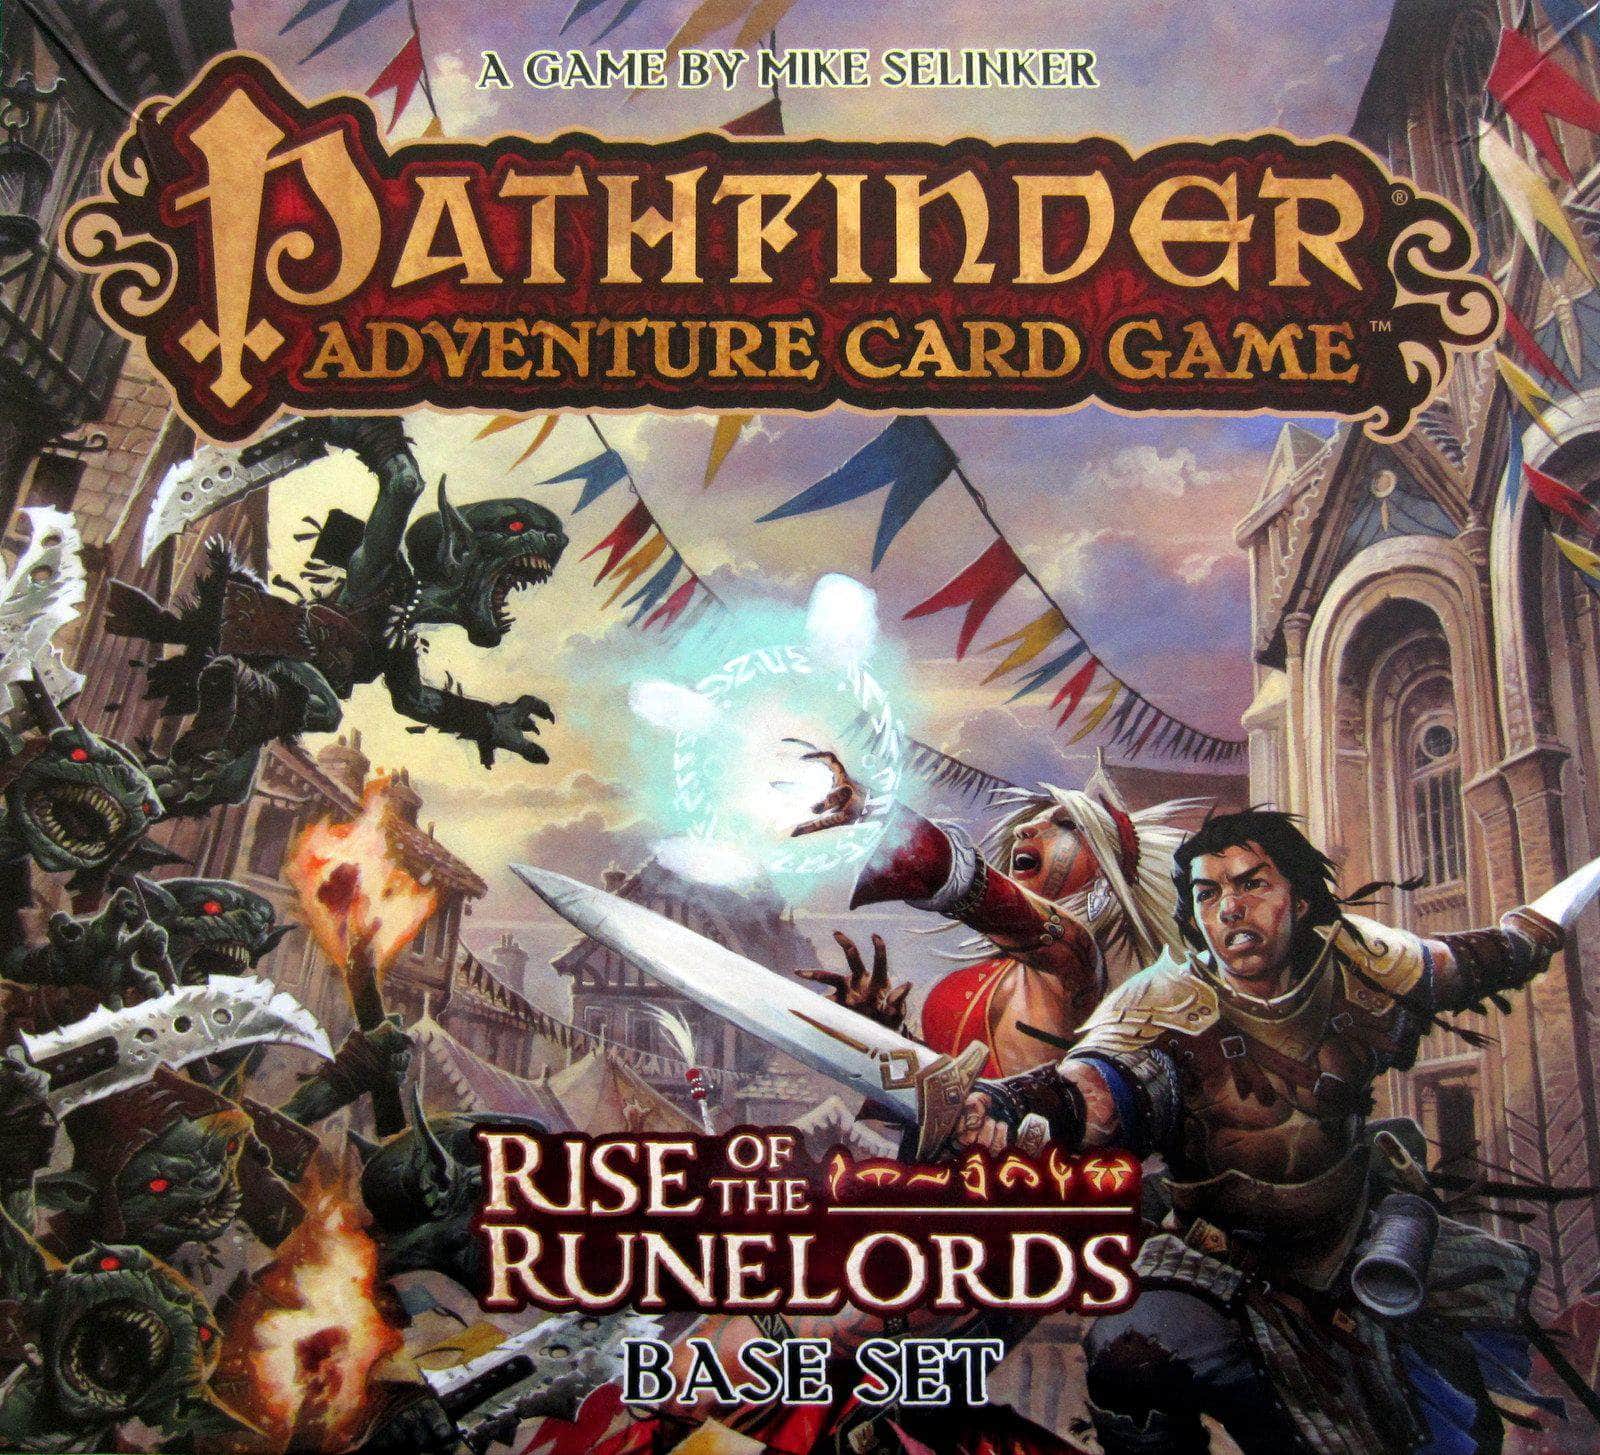 Pathfinder Adventure Card Game: Aufstieg der Runelords - Basis -Set (Retail Edition) Einzelhandelsbrettspiel Paizo Veröffentlichung KS800352A